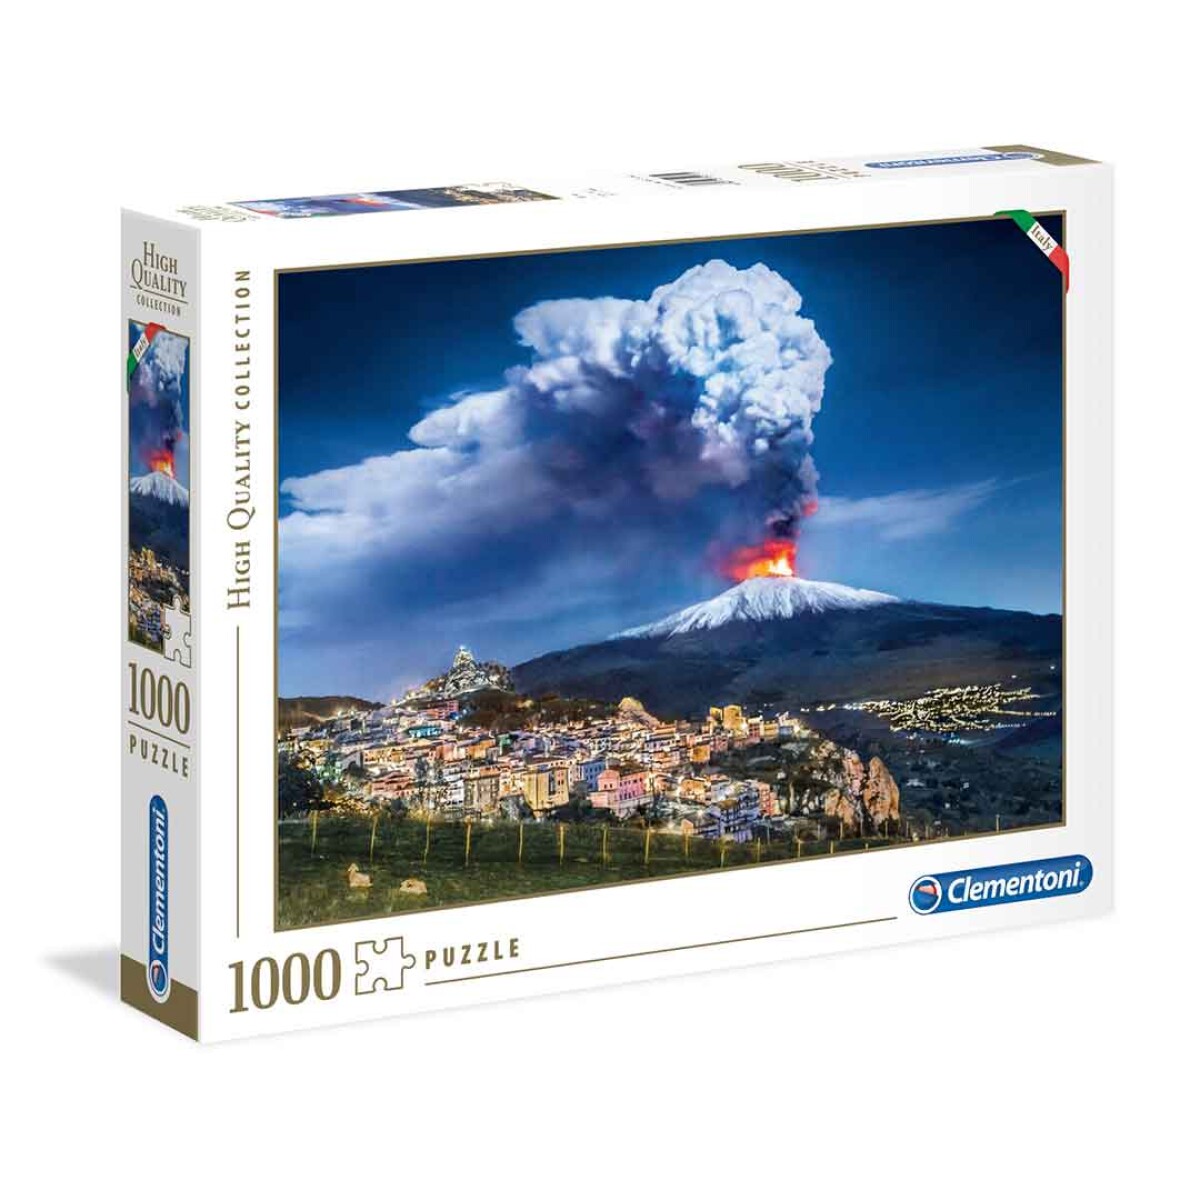 Puzzle Clementoni 1000 piezas Volcán Etna High Quality - 001 